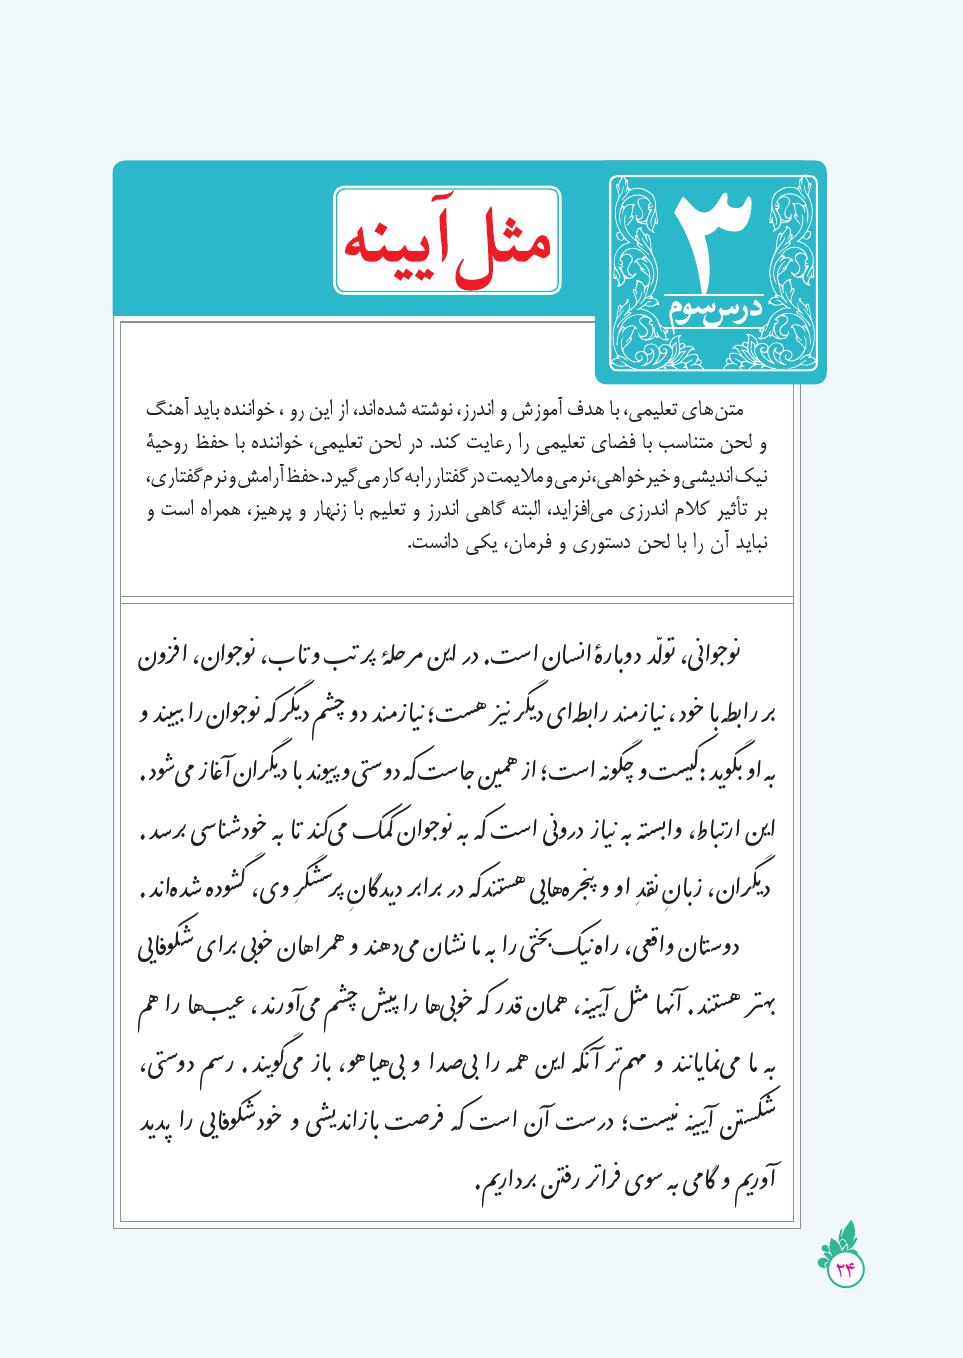 دانلود درسنامه کامل فارسی نهم ( درس 3 ) مثل آیینه ، کار و شایستگی 2021